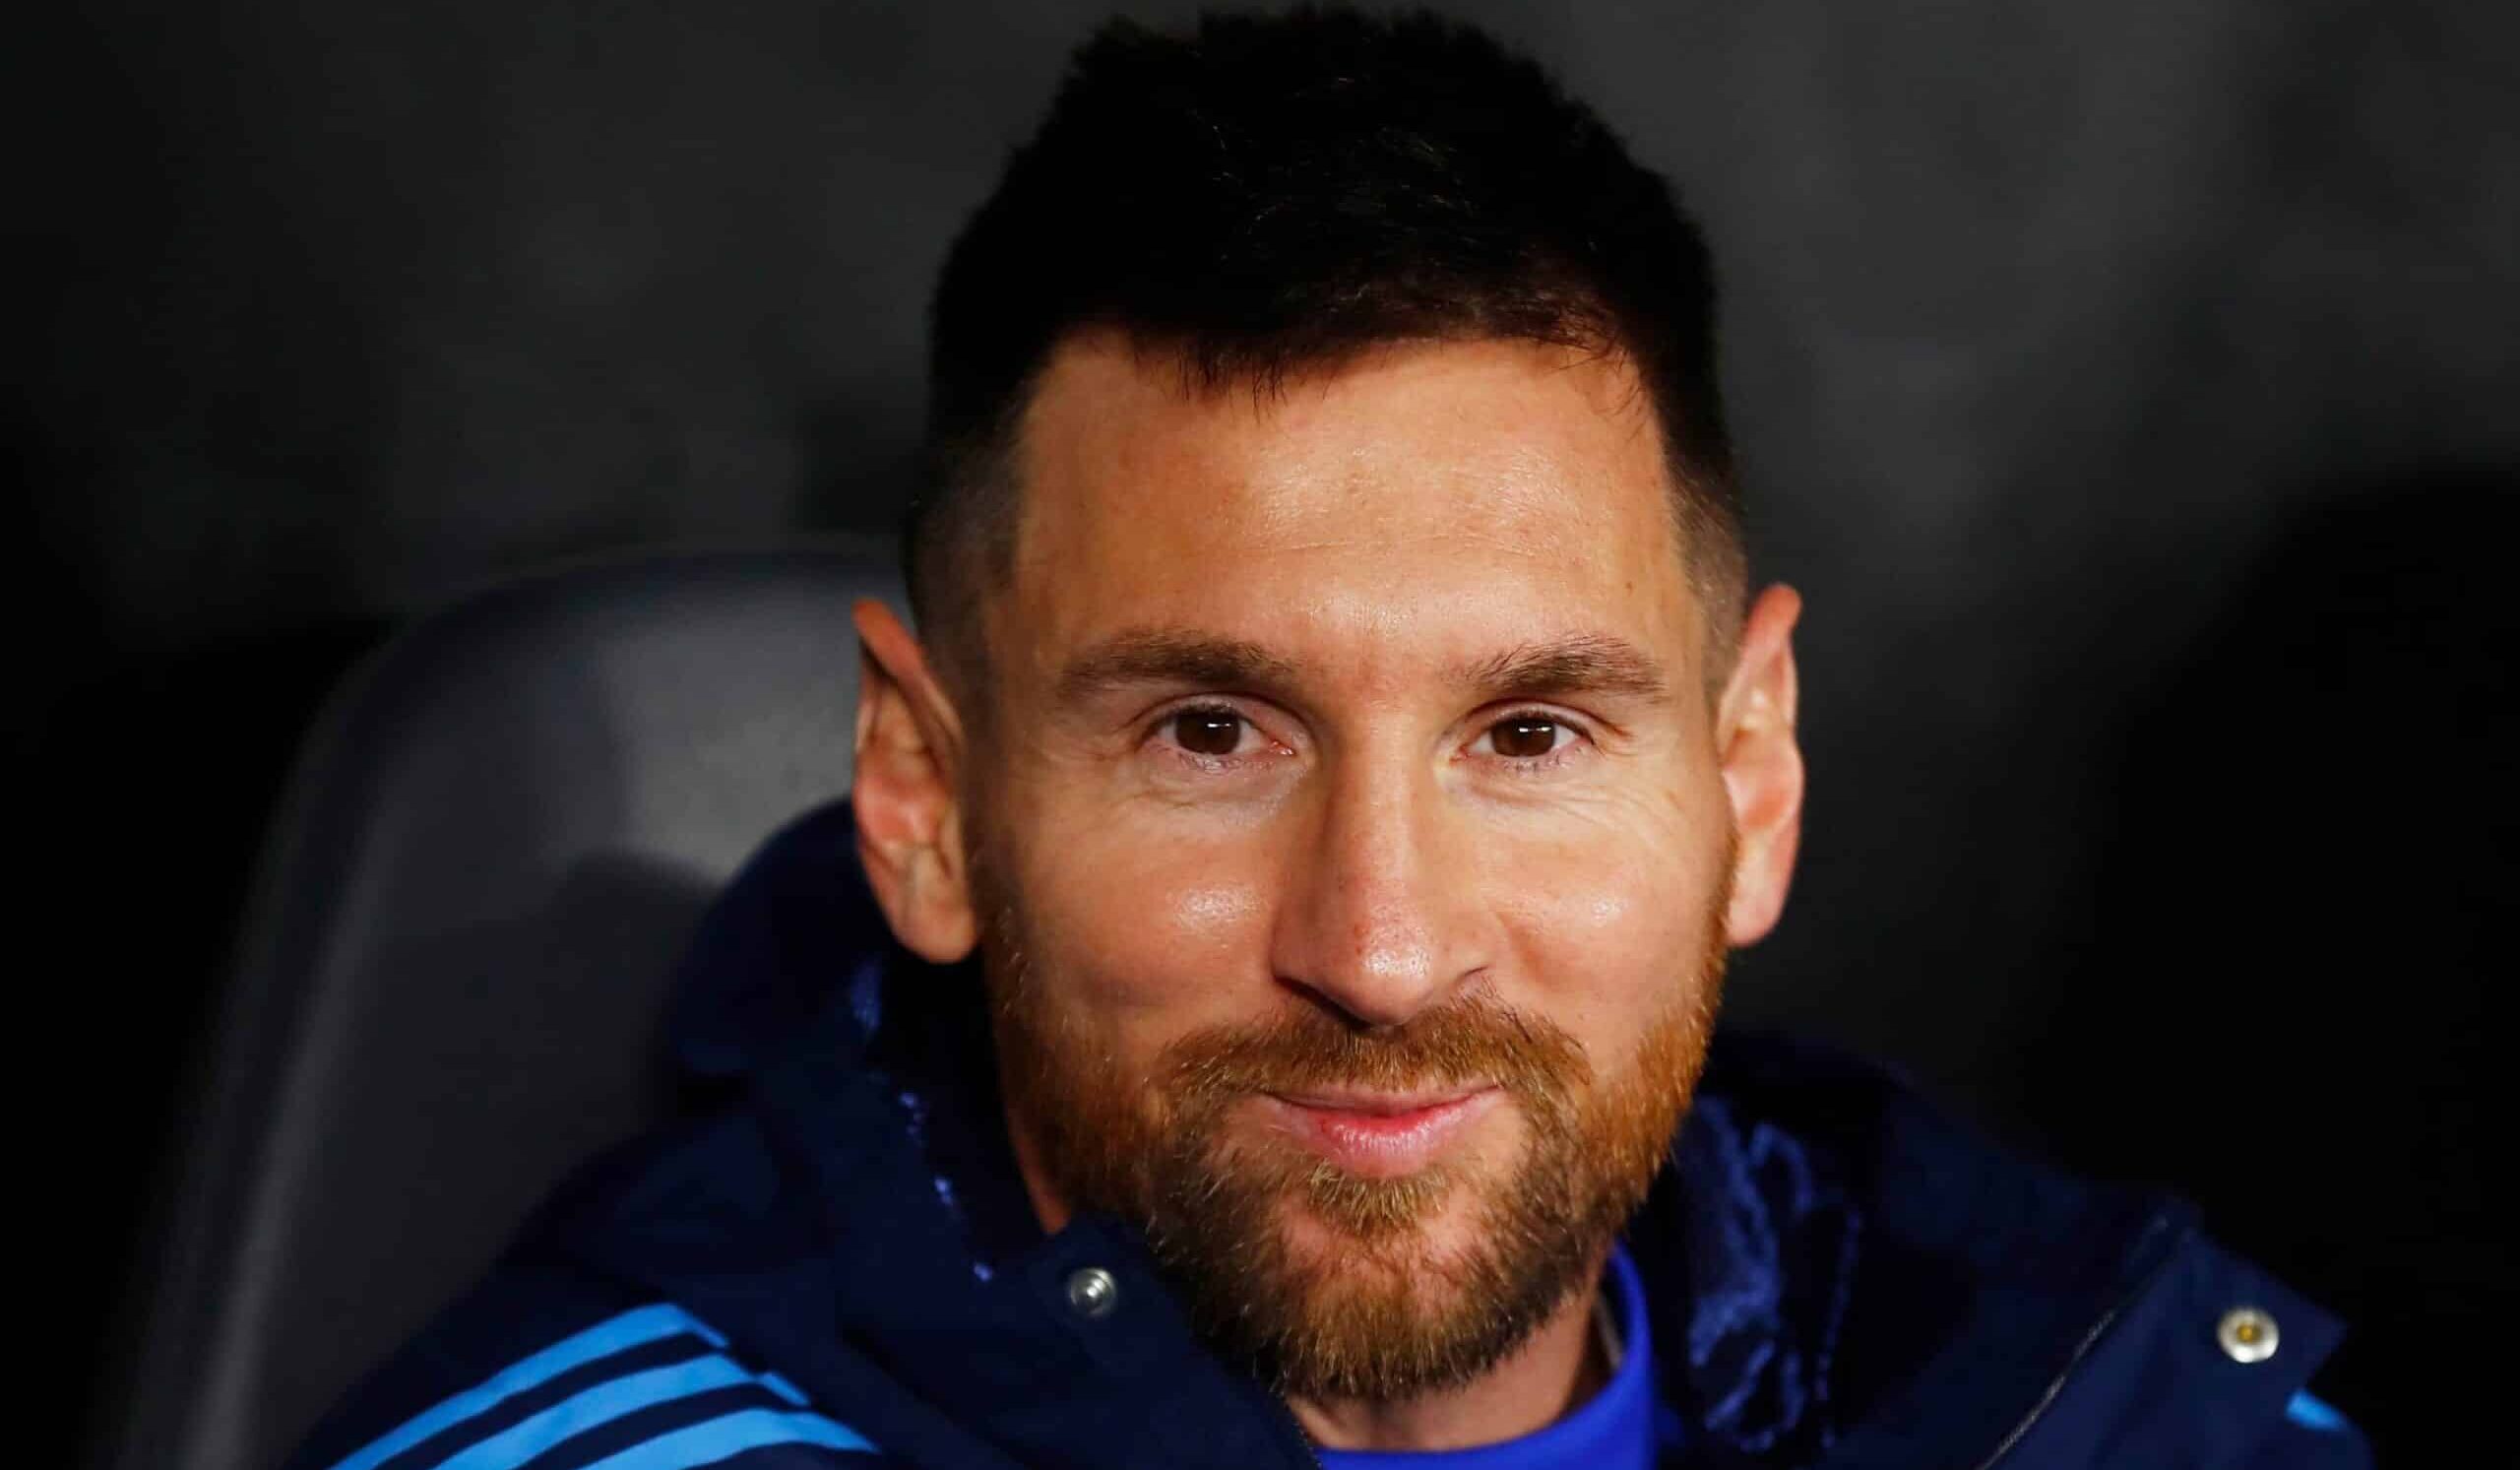 El EMOTIVO posteo de Messi post victoria de Argentina